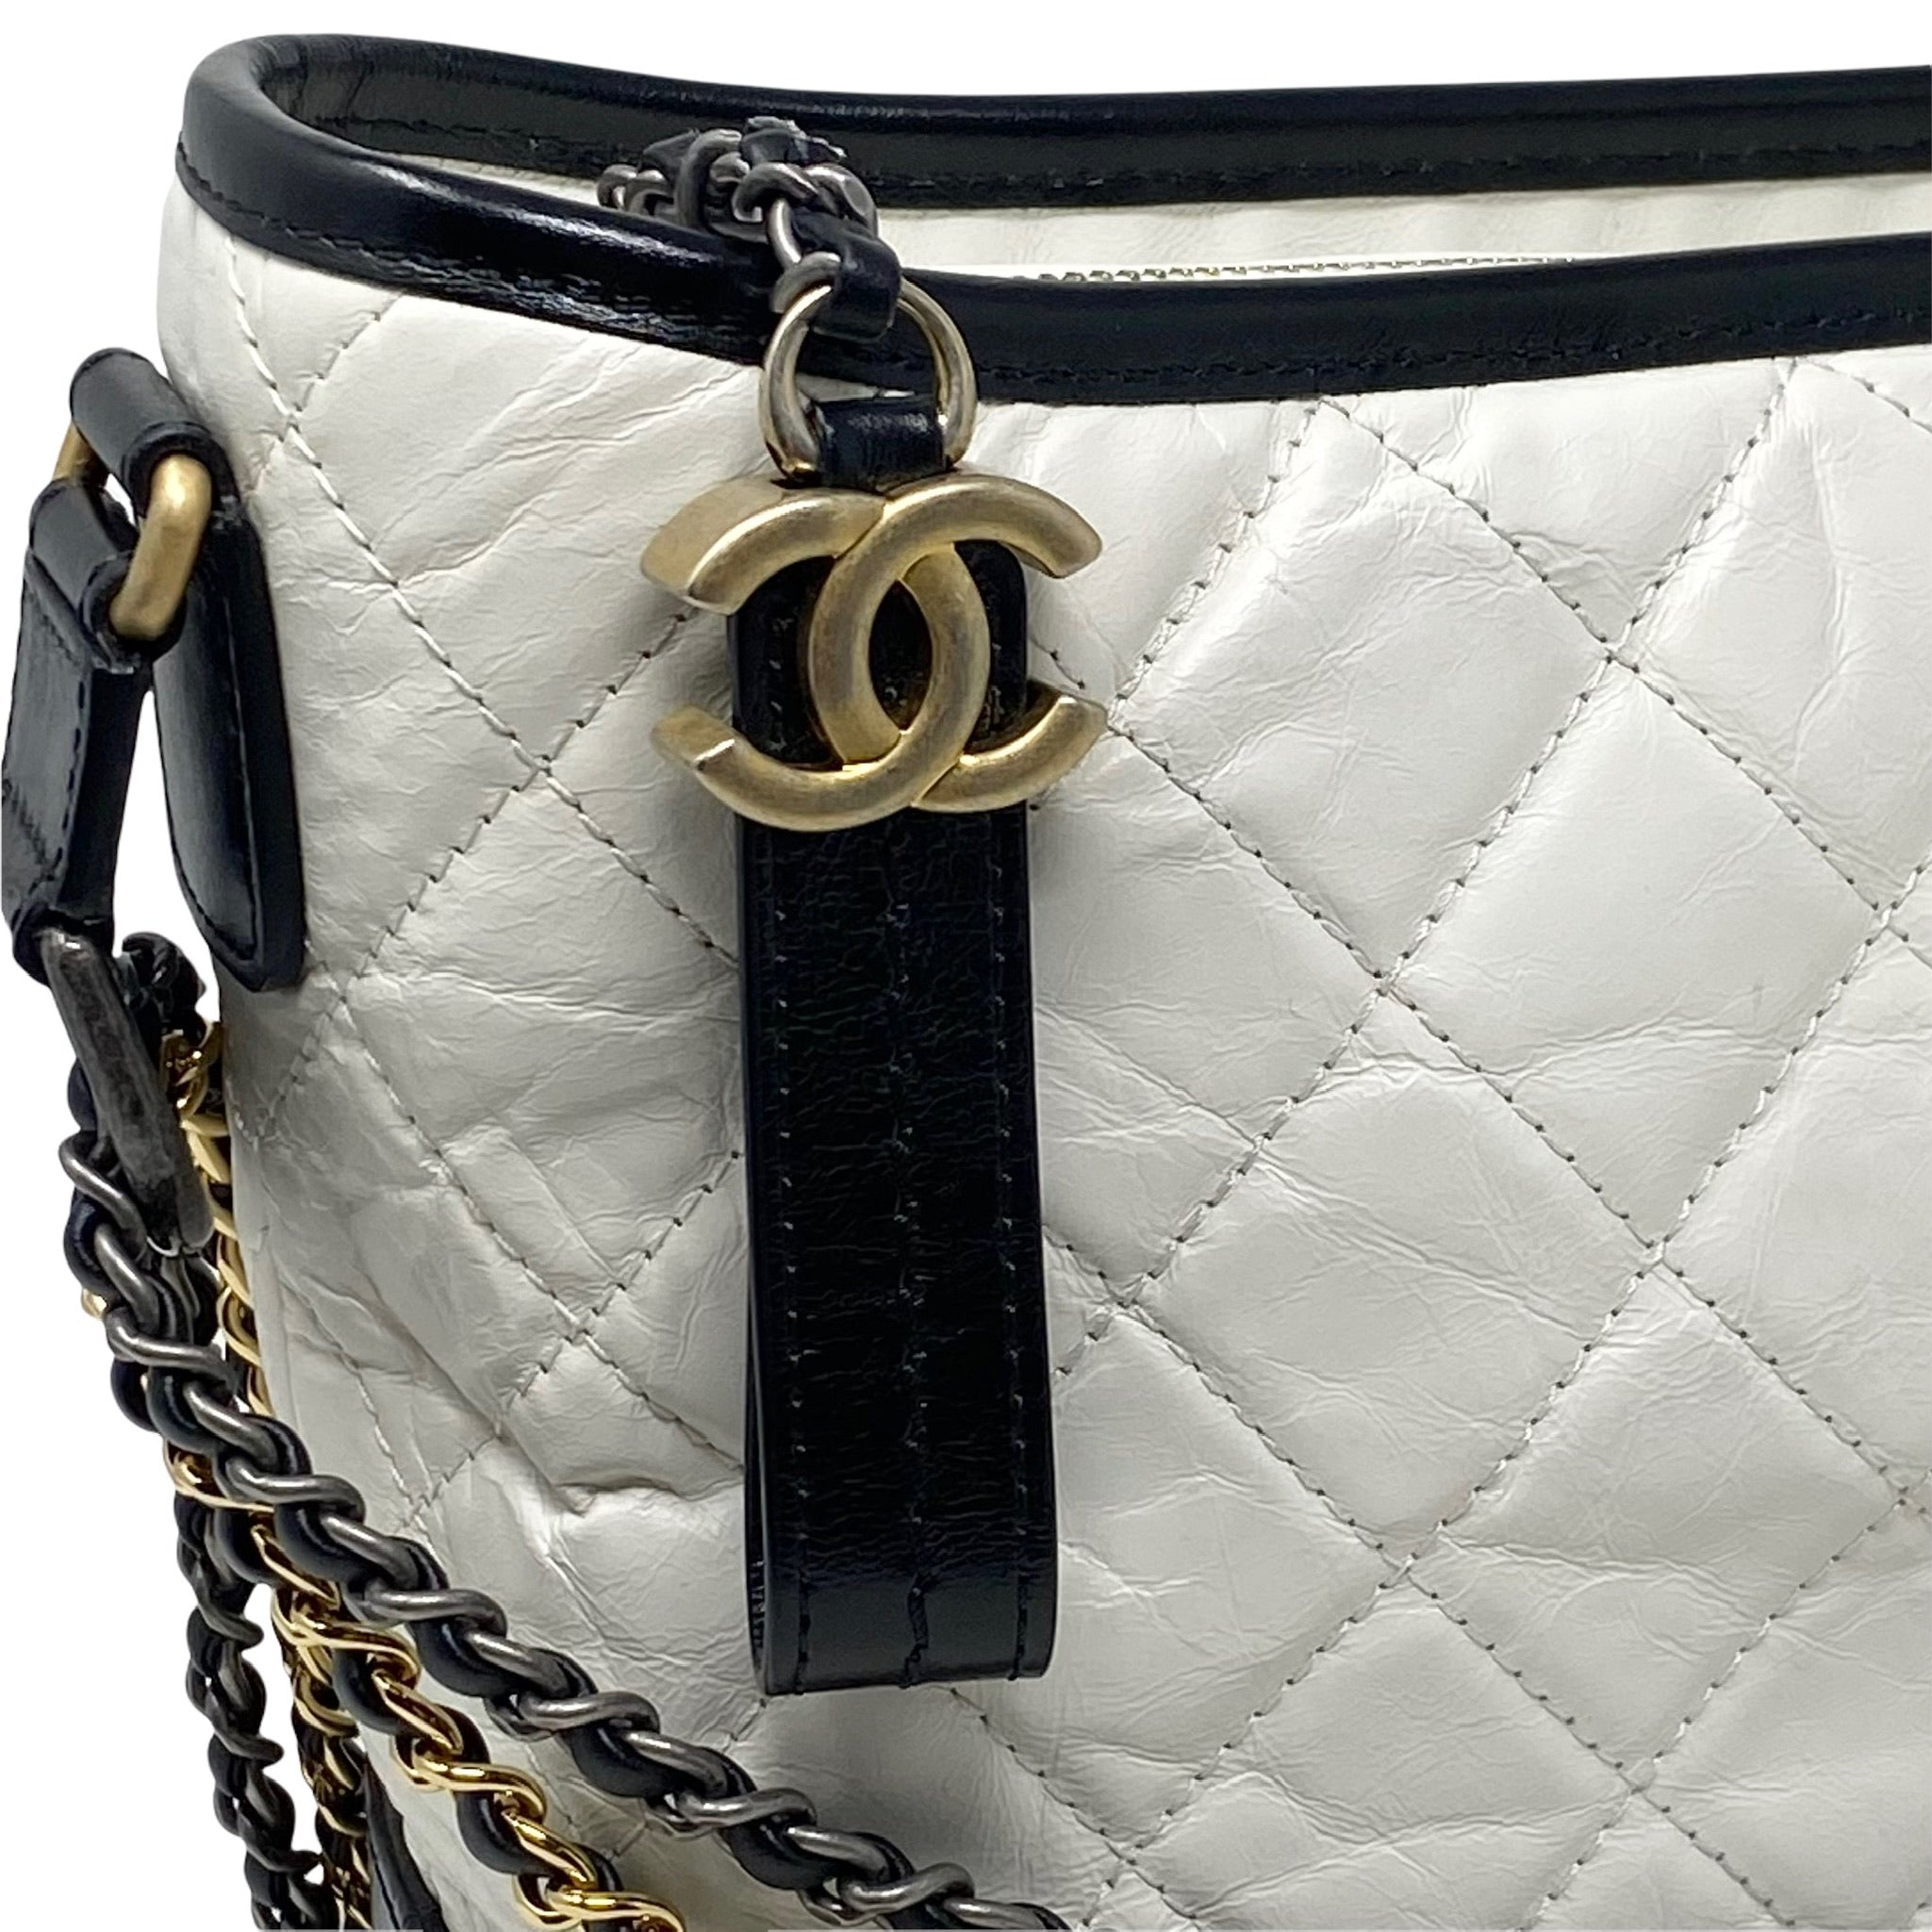 Chanel White Medium Gabrielle Bag